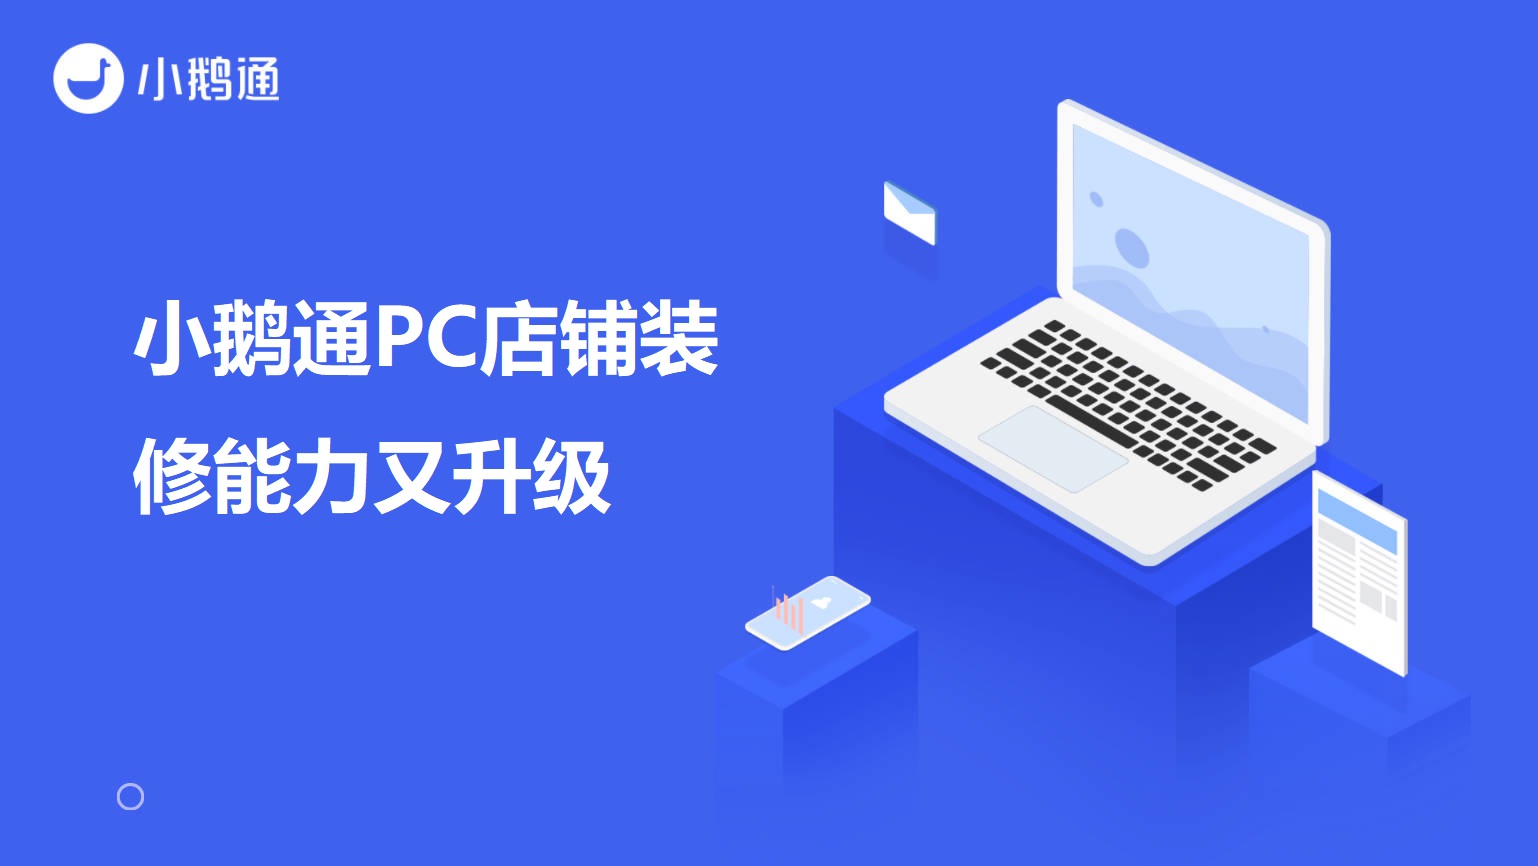 新华小鹅通PC店铺装修能力又升级啦！自定义背景色、课程分类、直播等组件优化！